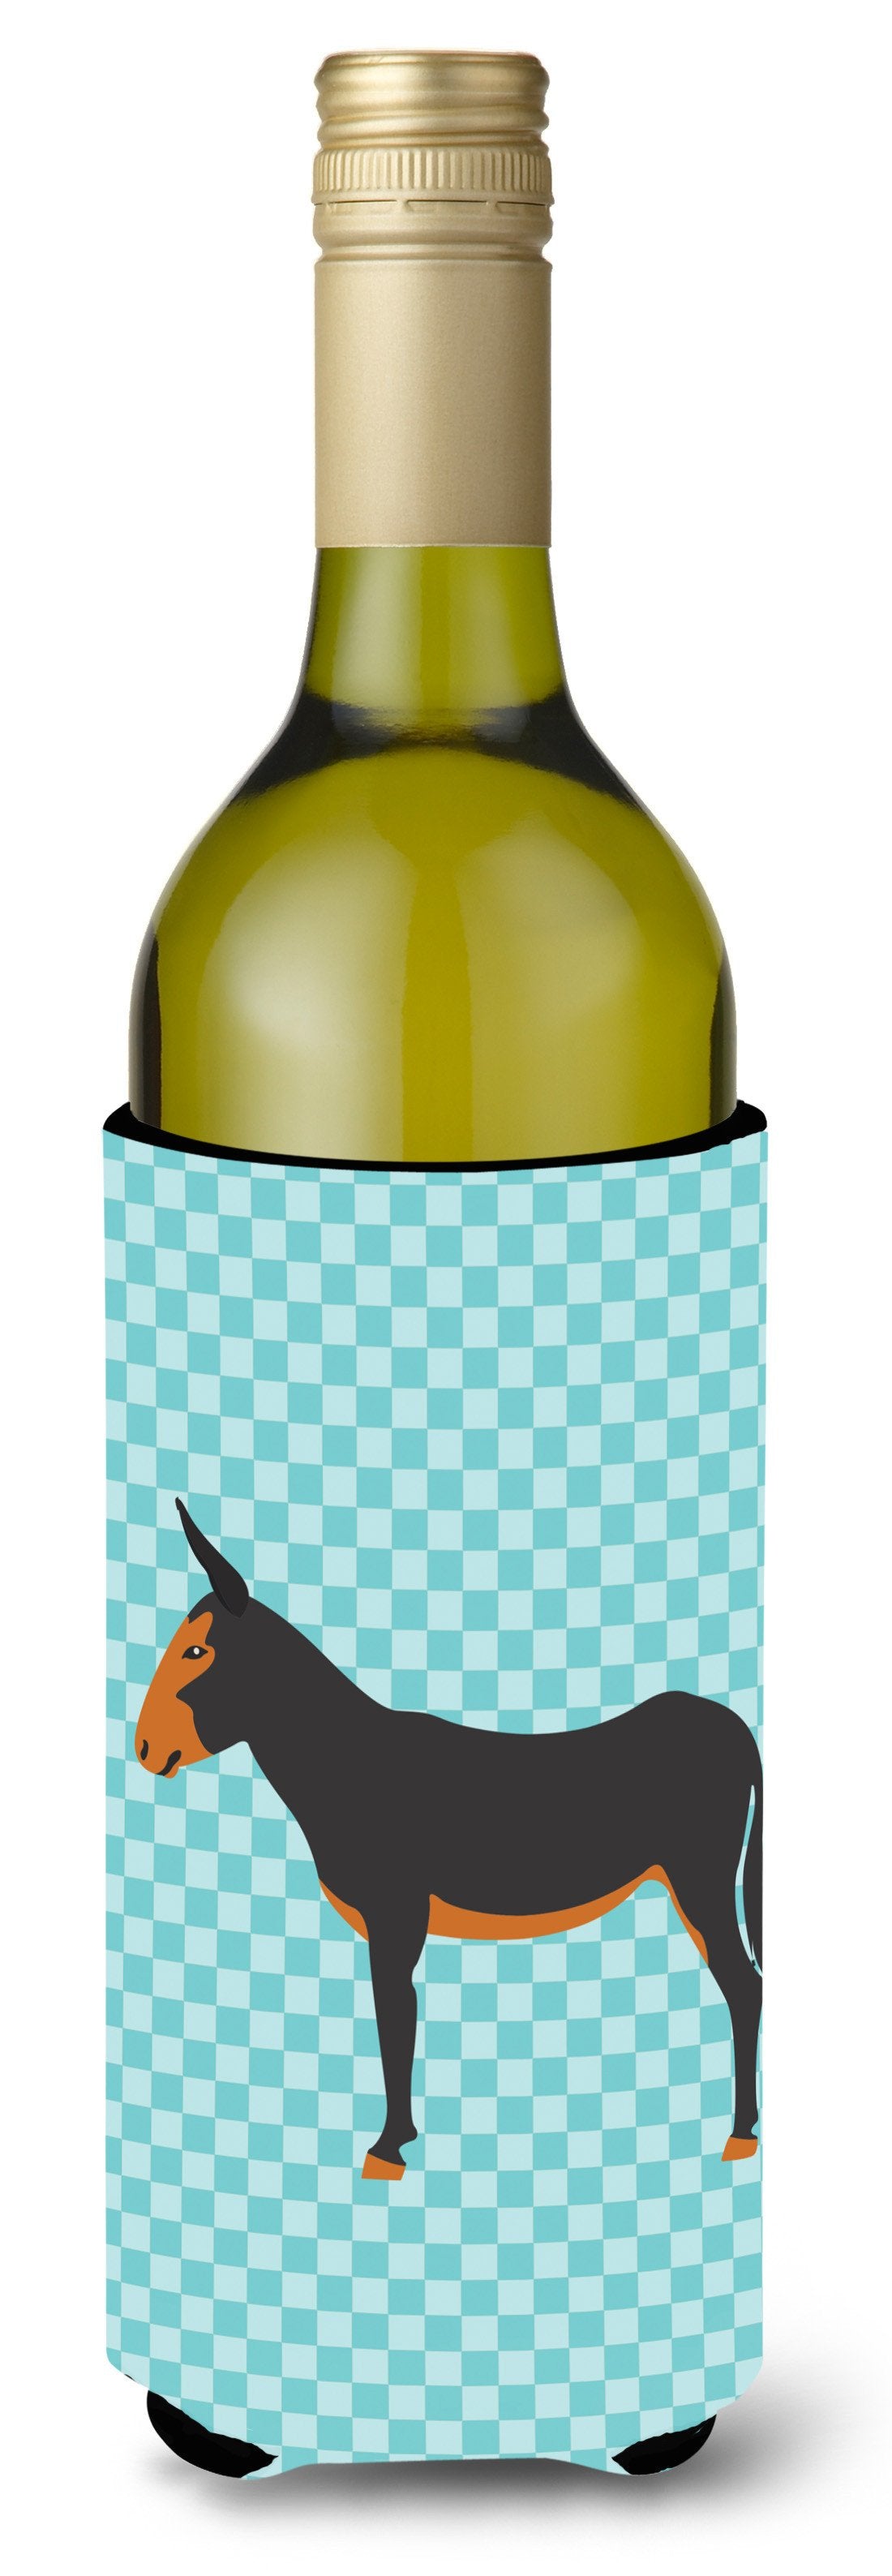 Catalan Donkey Blue Check Wine Bottle Beverge Insulator Hugger BB8029LITERK by Caroline's Treasures